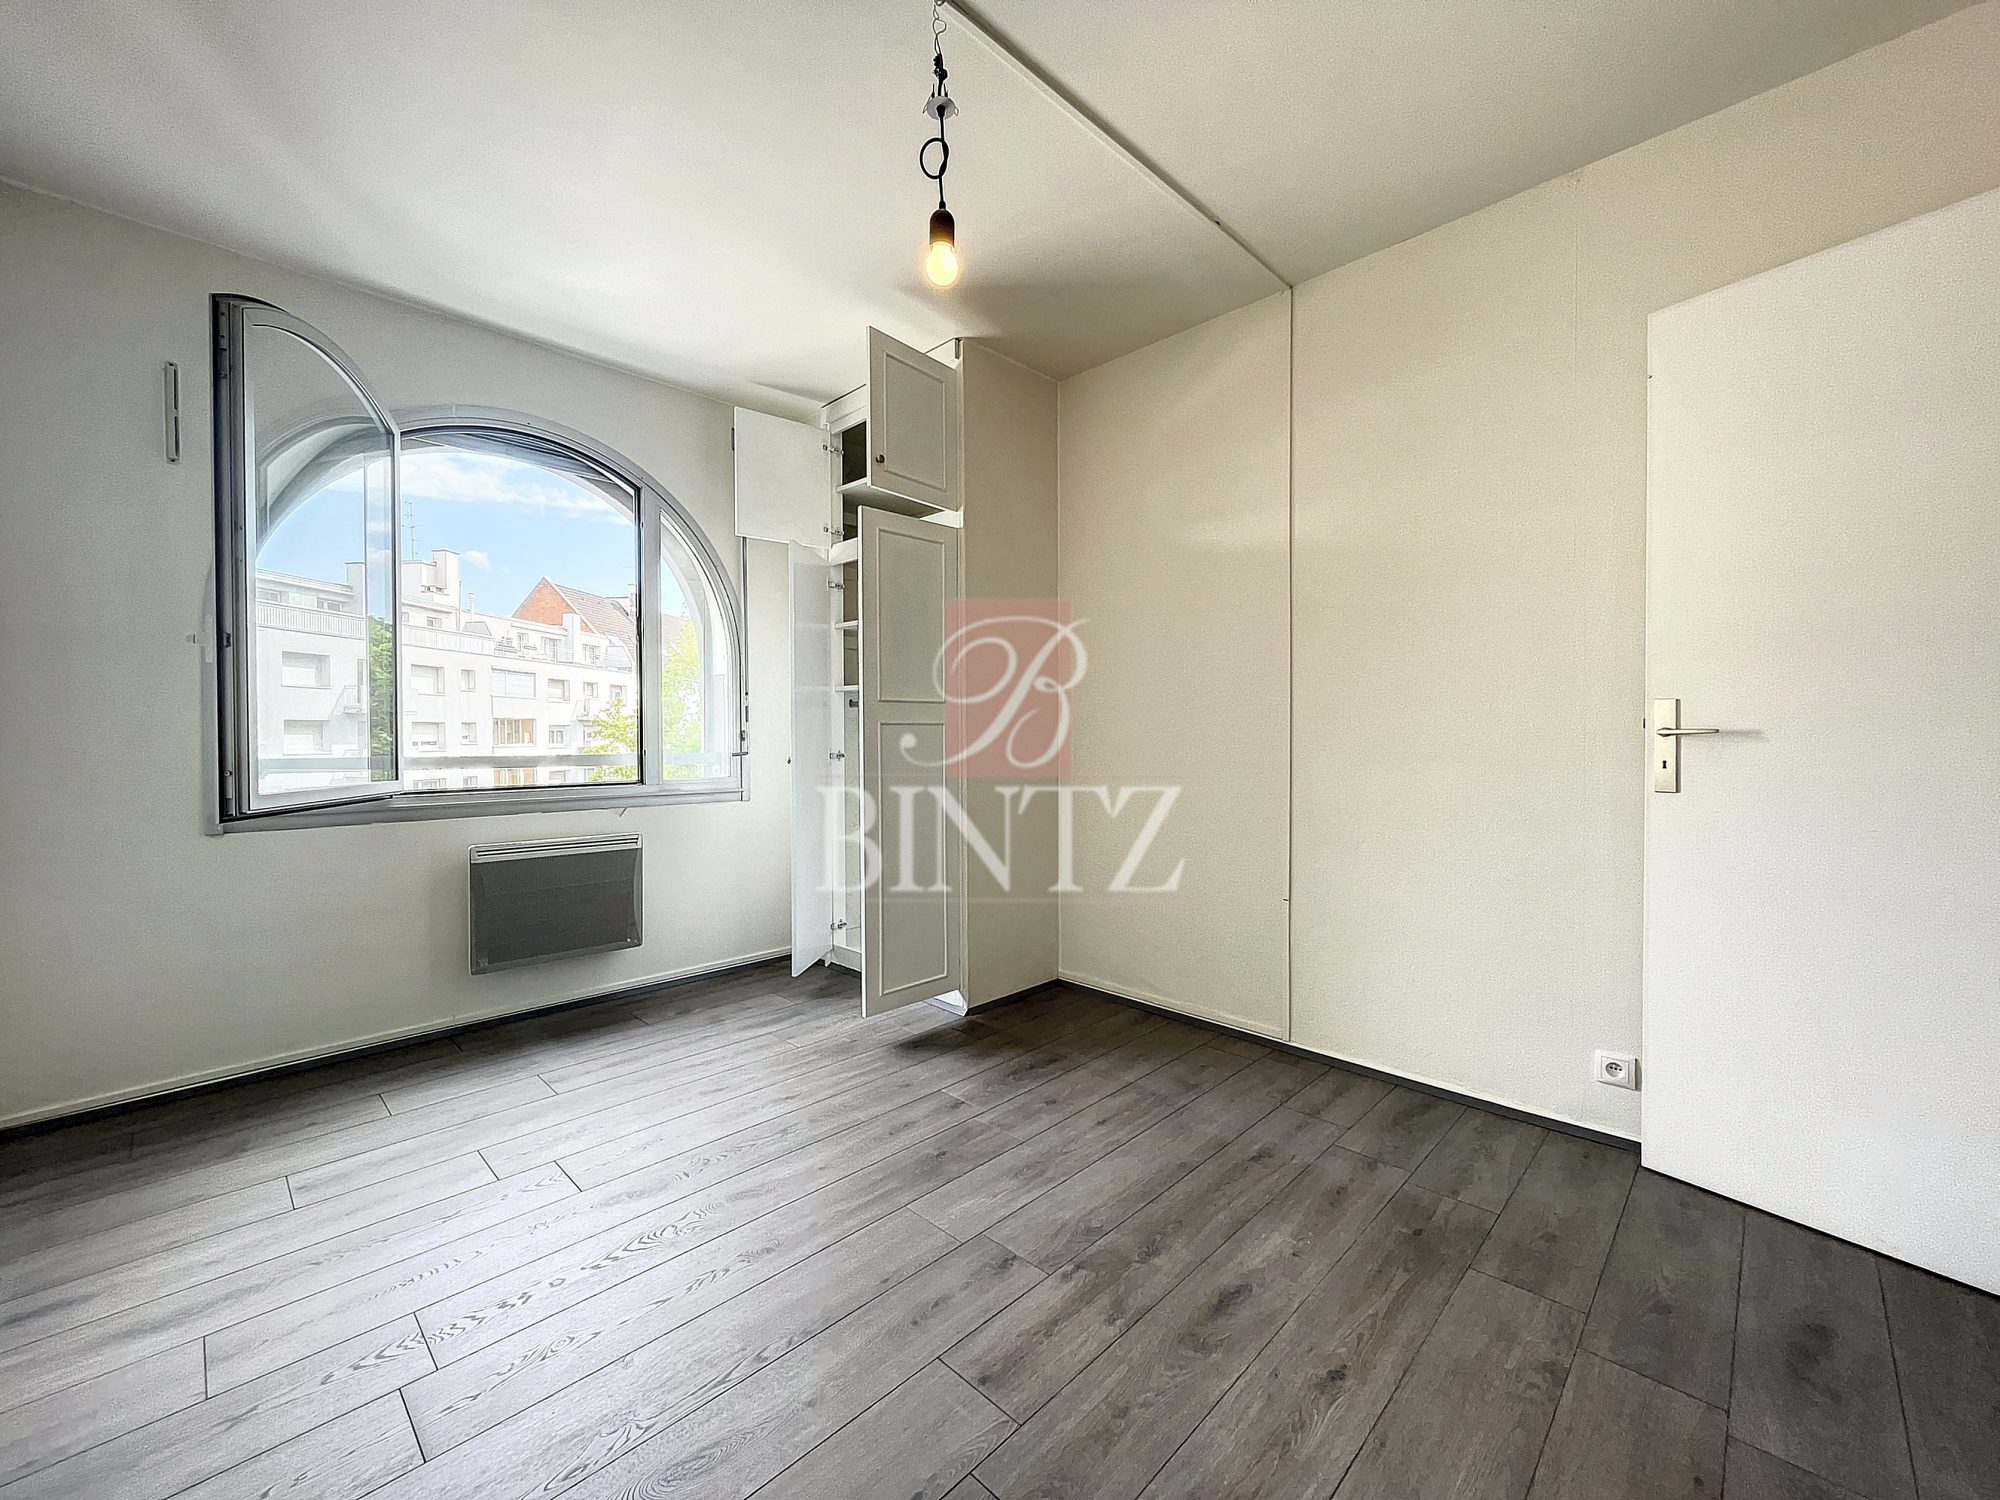 3PIECES PROCHE RIVÉTOILE - location appartement Strasbourg - Bintz Immobilier - 1